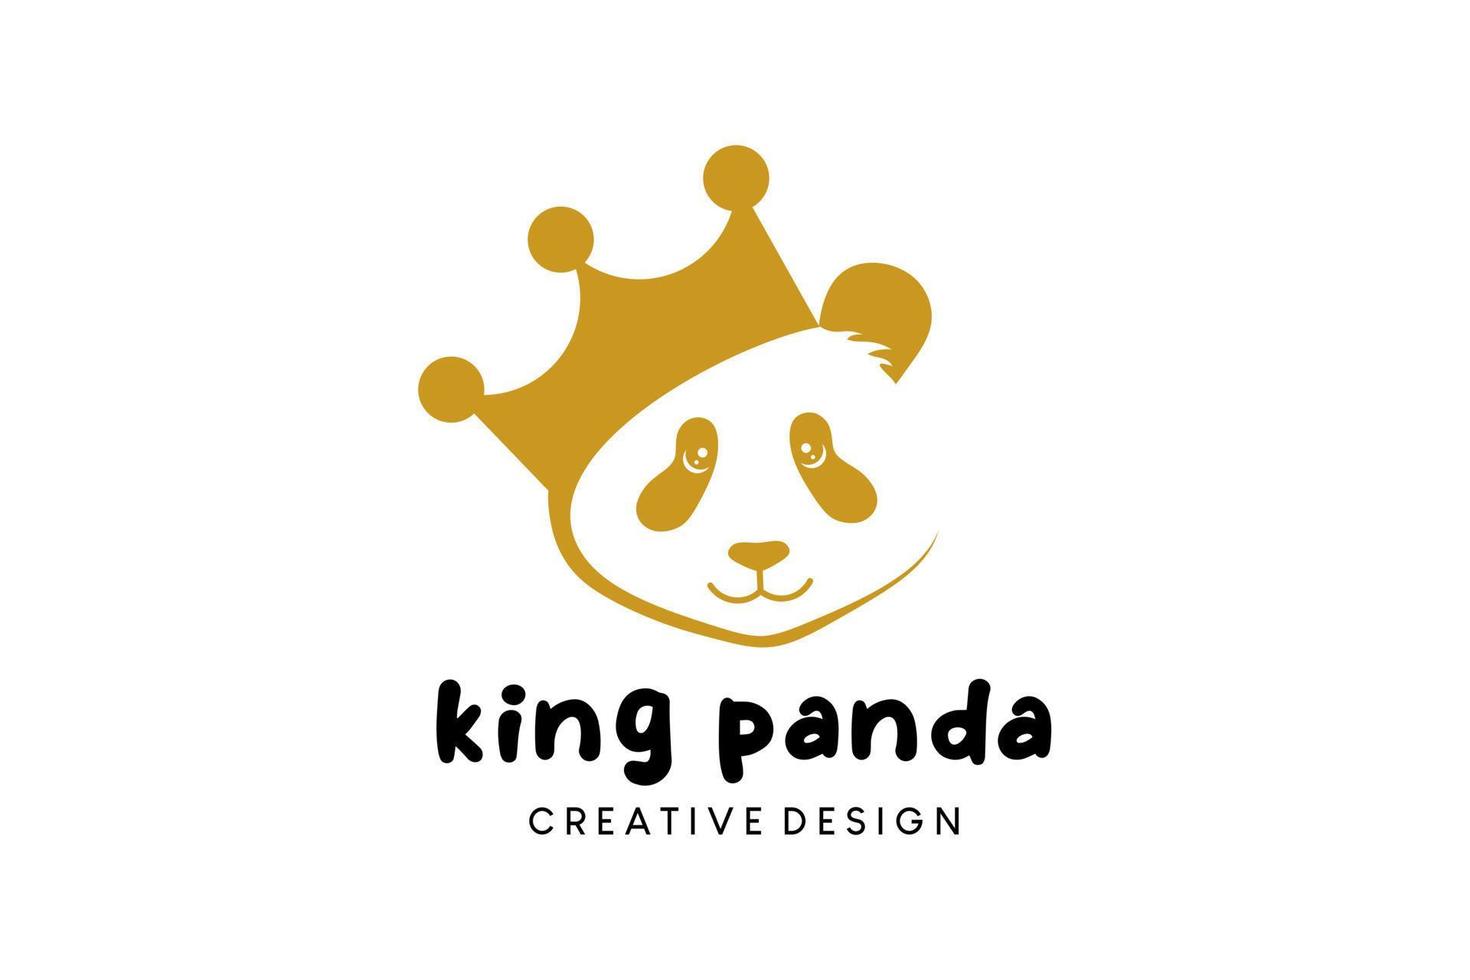 Panda king icon logo design, panda king crown vector illustration